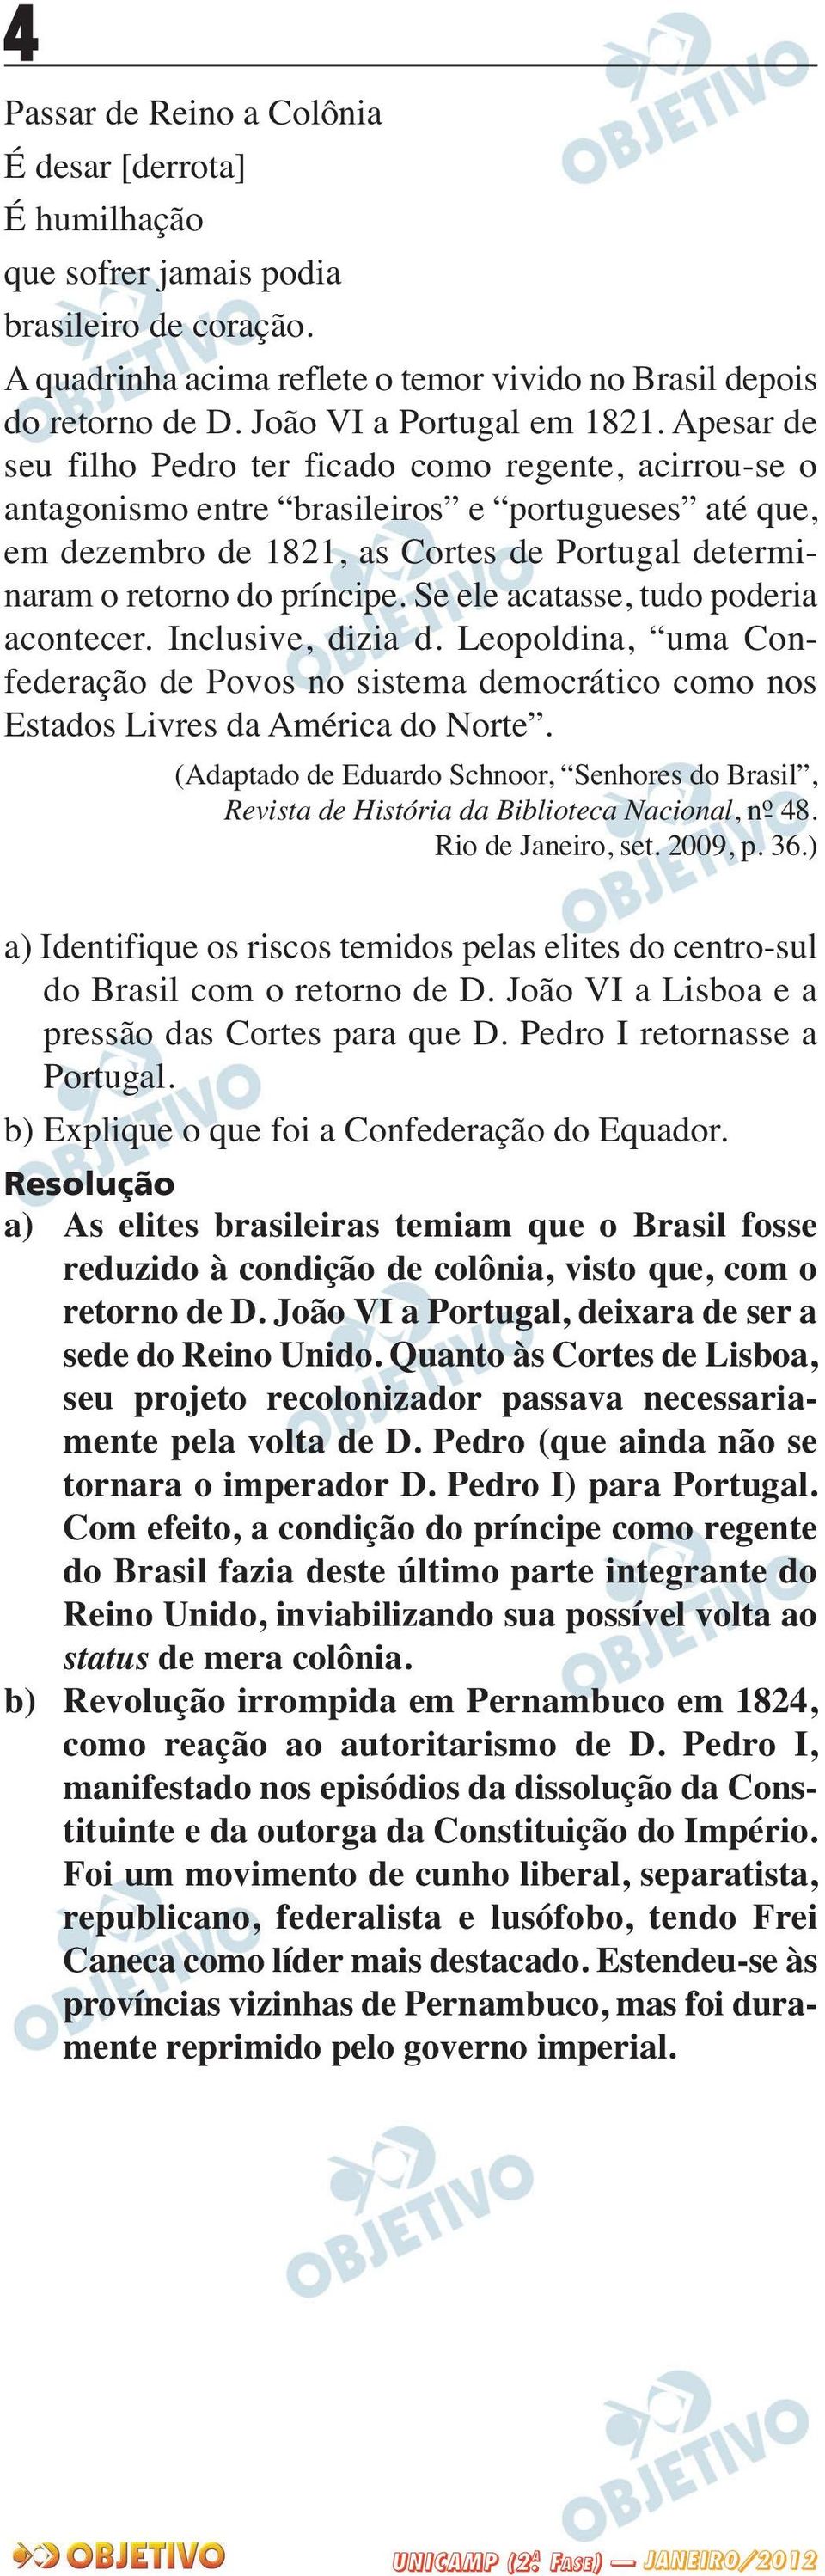 Apesar de seu filho Pedro ter ficado como regente, acirrou-se o antagonismo entre brasileiros e portugueses até que, em dezembro de 1821, as Cortes de Portugal determi - naram o retorno do príncipe.